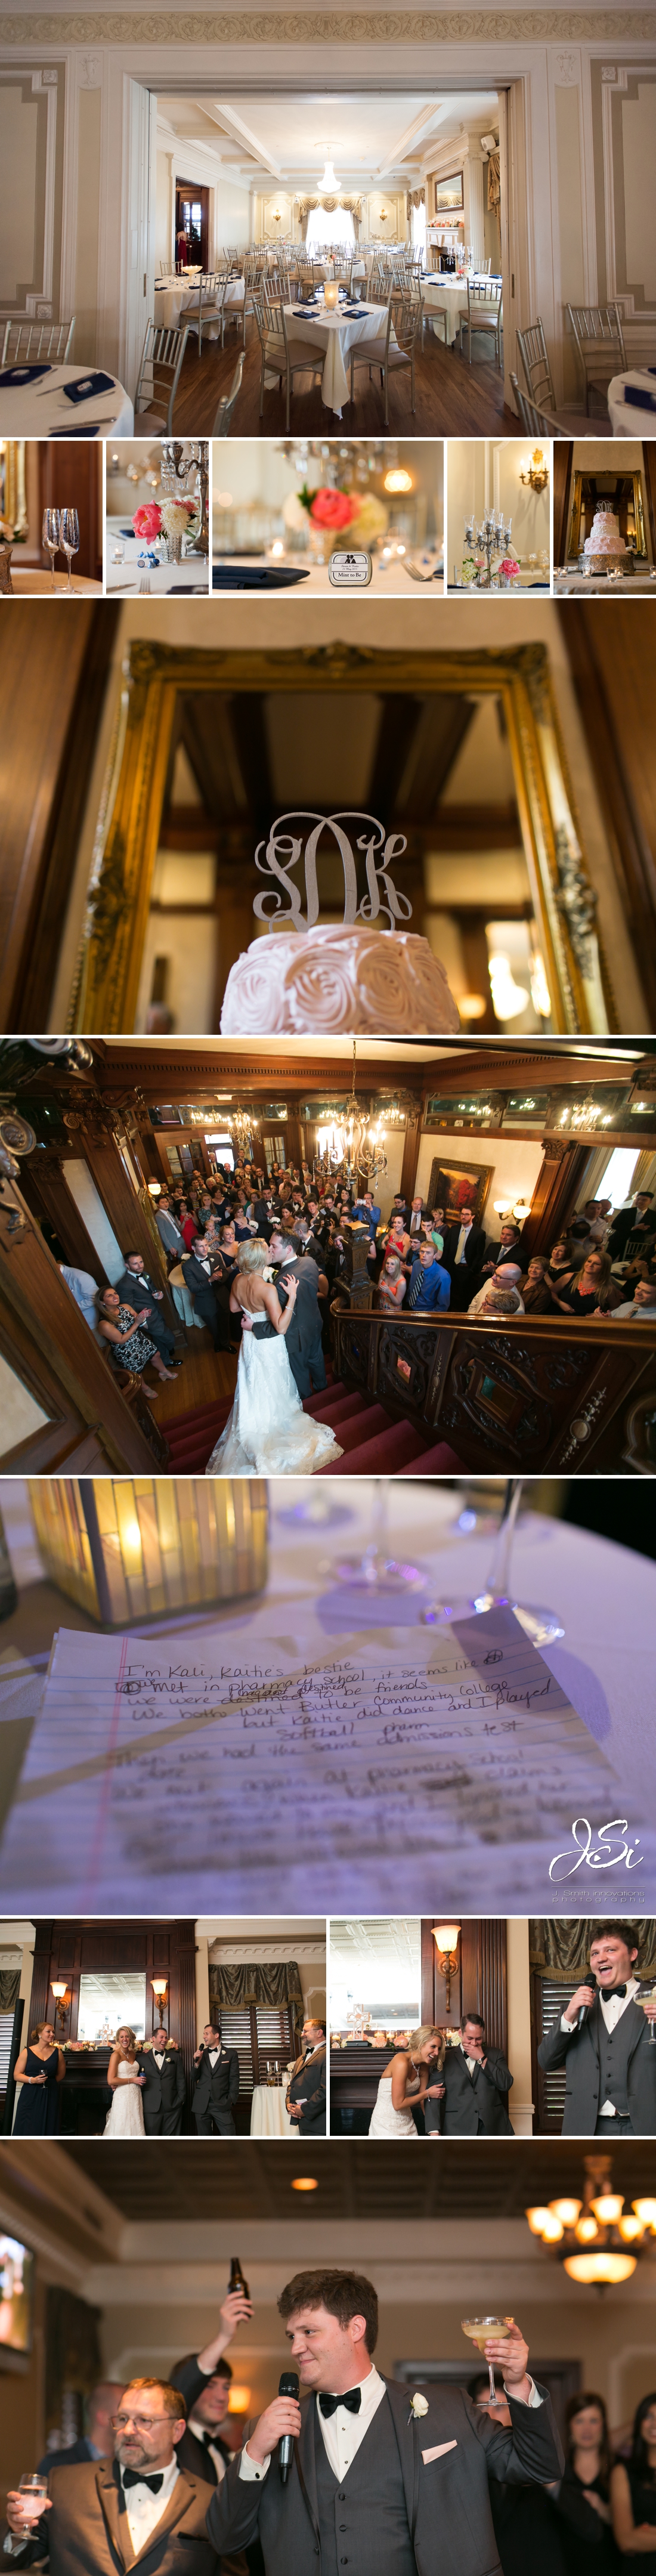 Kansas City Loose Mansion elegant wedding photo